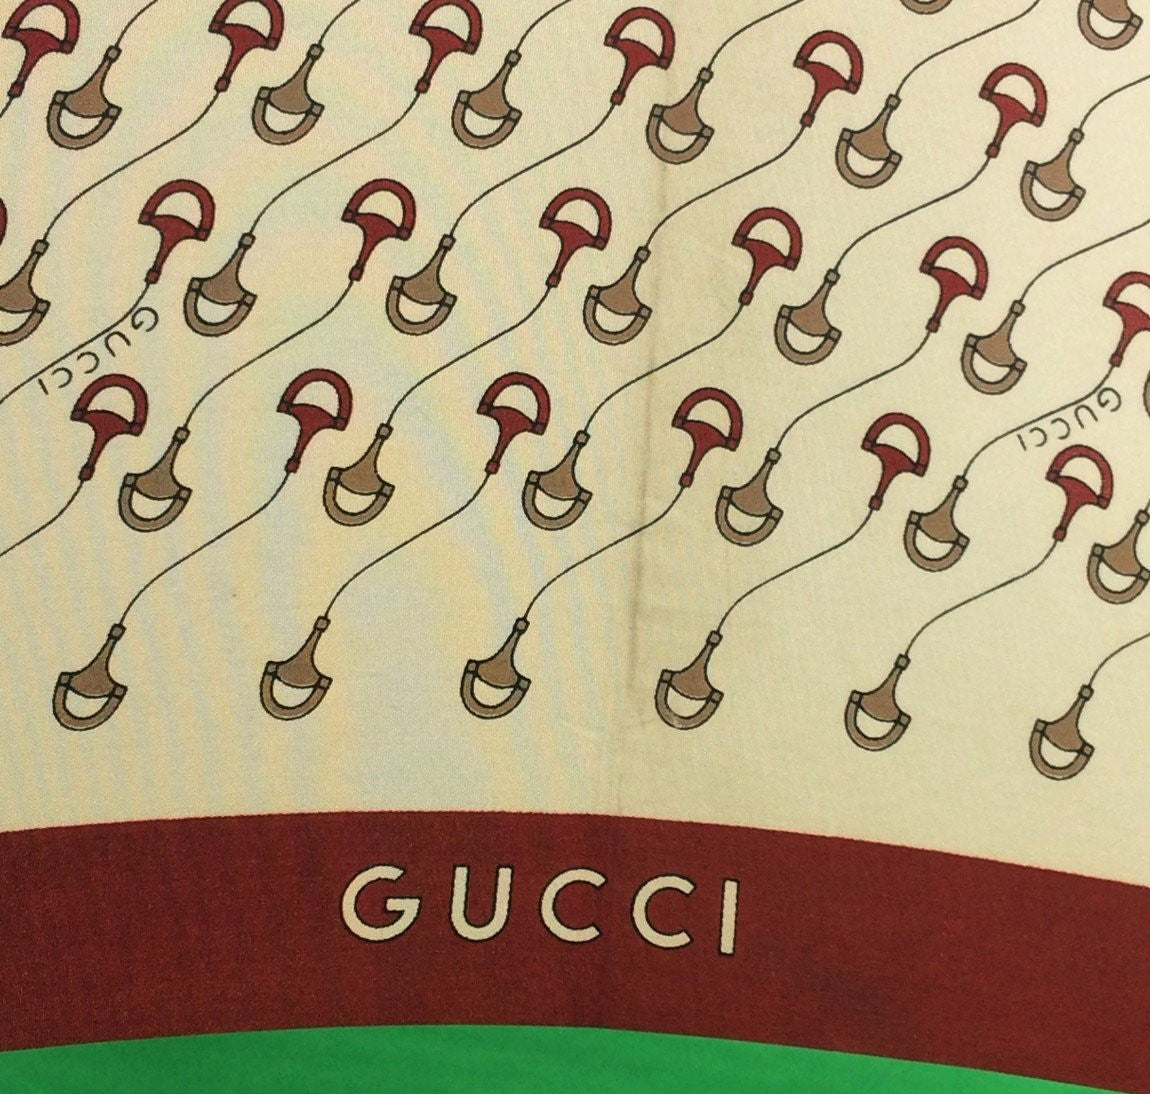 "Gucci c1970s Umbrella w/ Malacca Cane Handle"